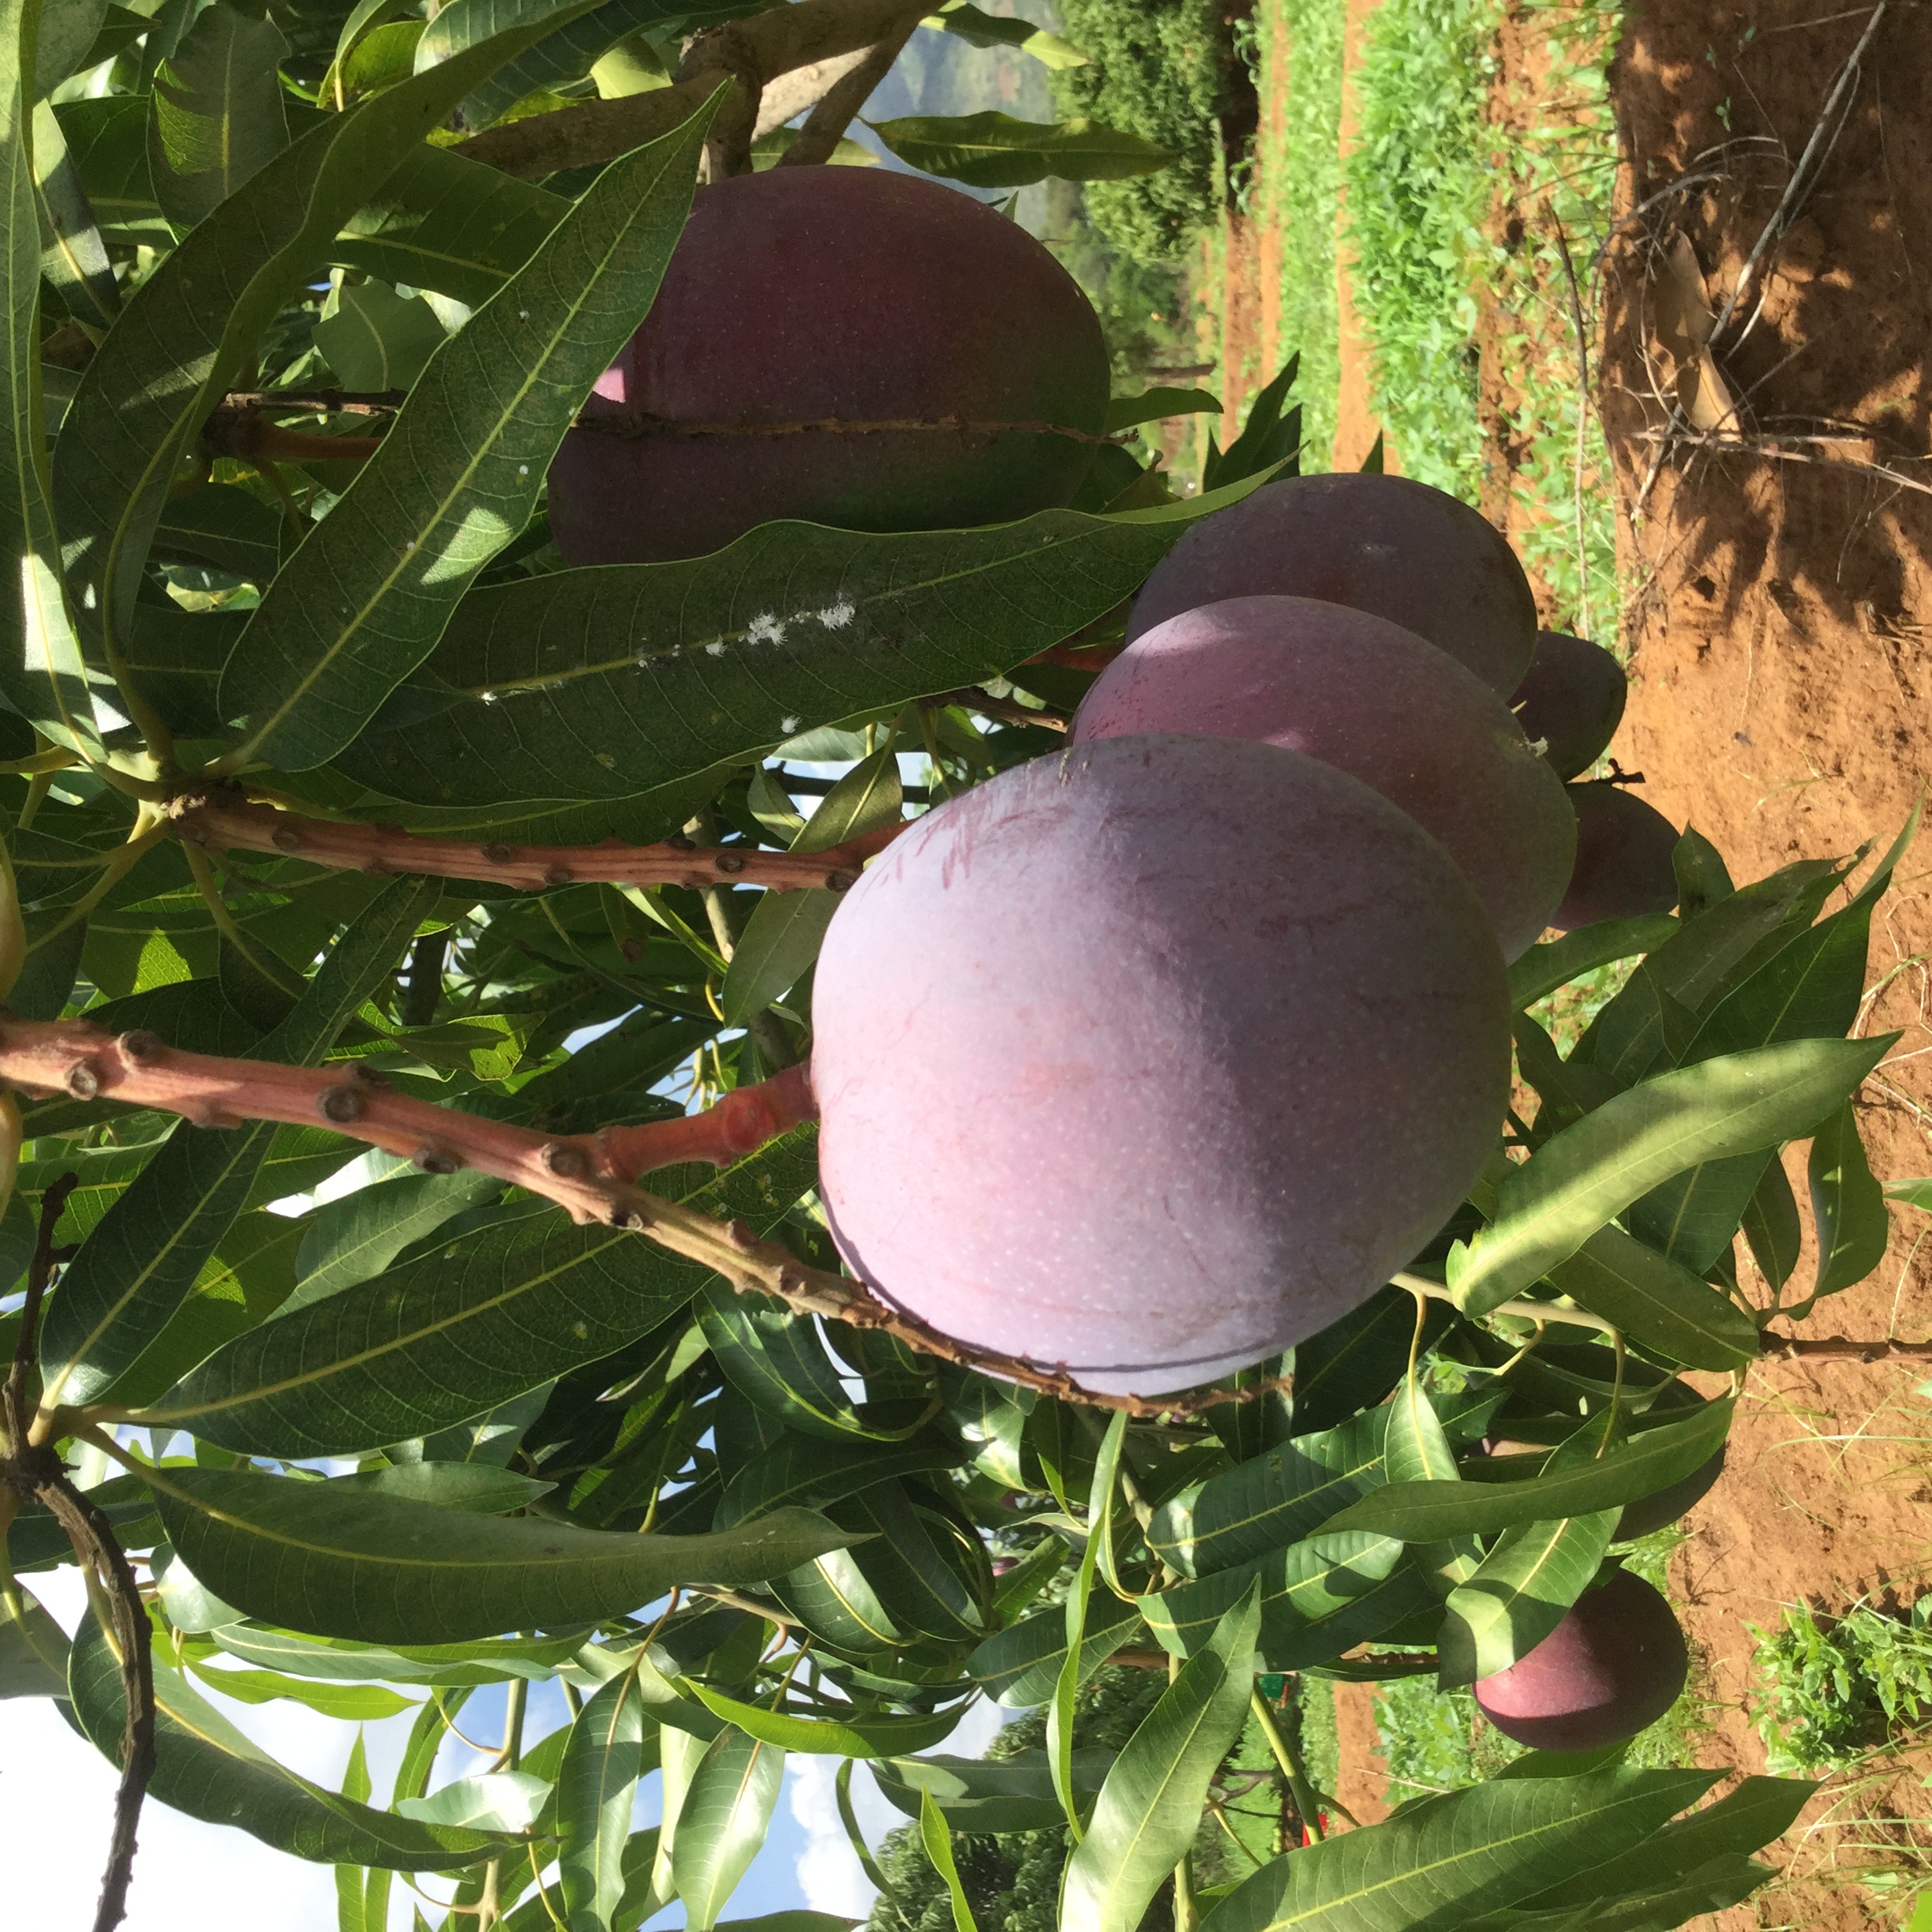 Mangoes on tree in Kenya